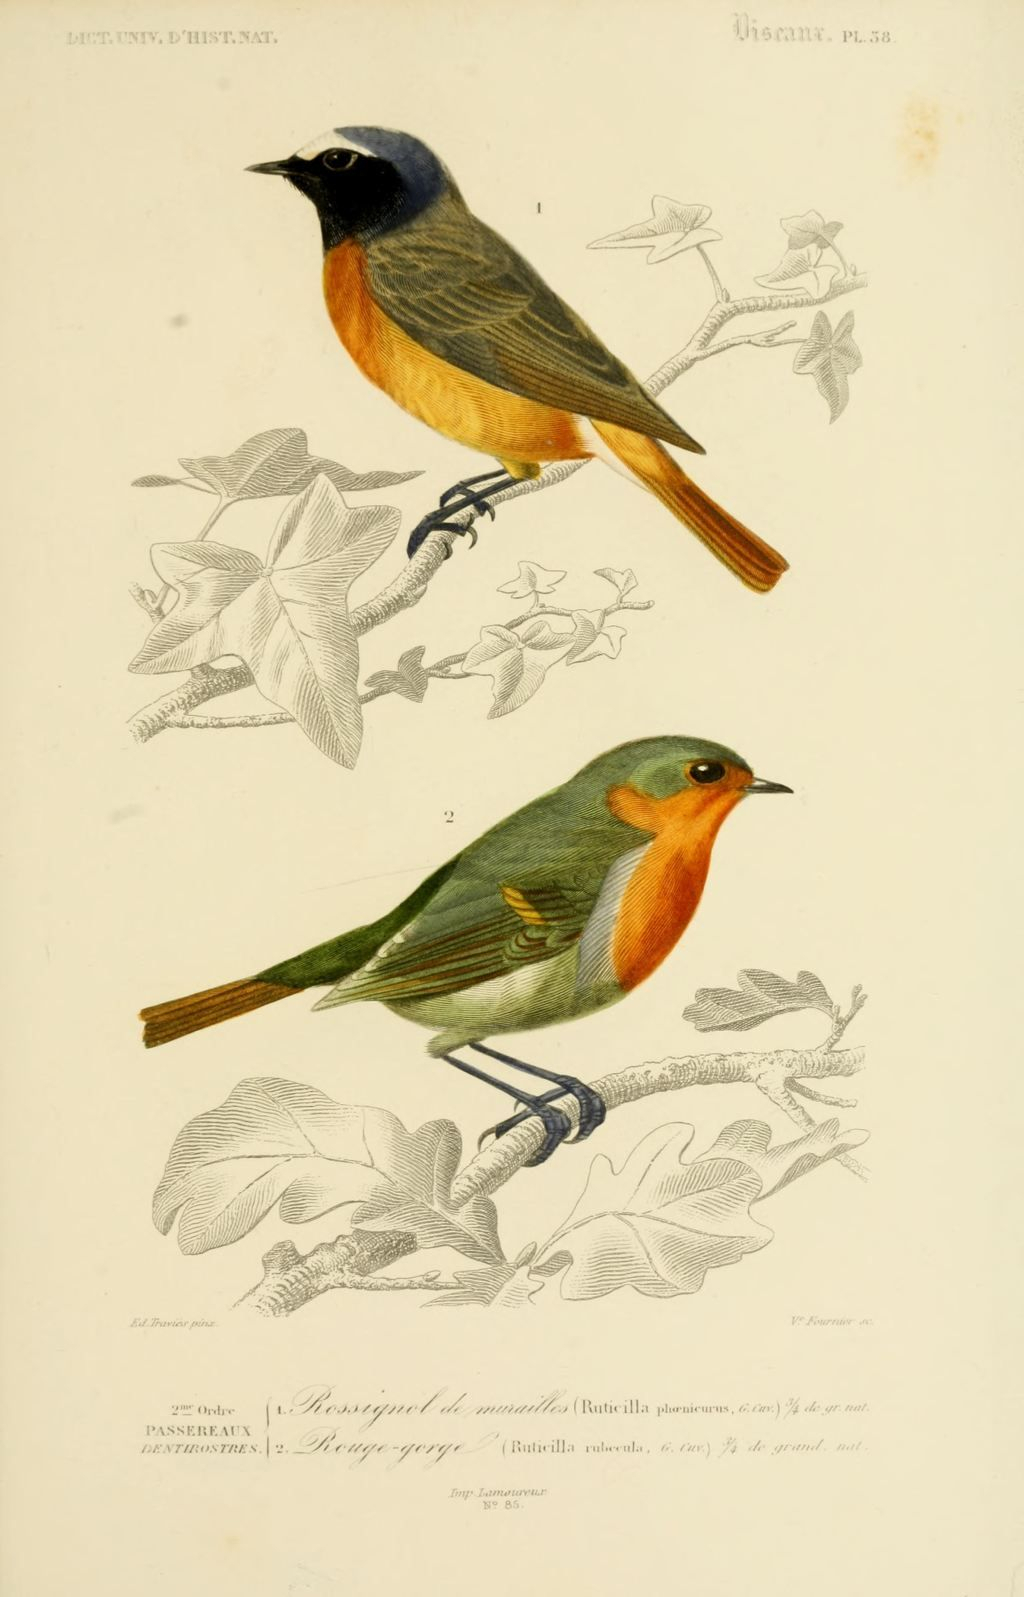 #Oiseau #Birds #Nightingal | Vintage Bird Illustration à Dessin D&amp;amp;#039;Oiseau,